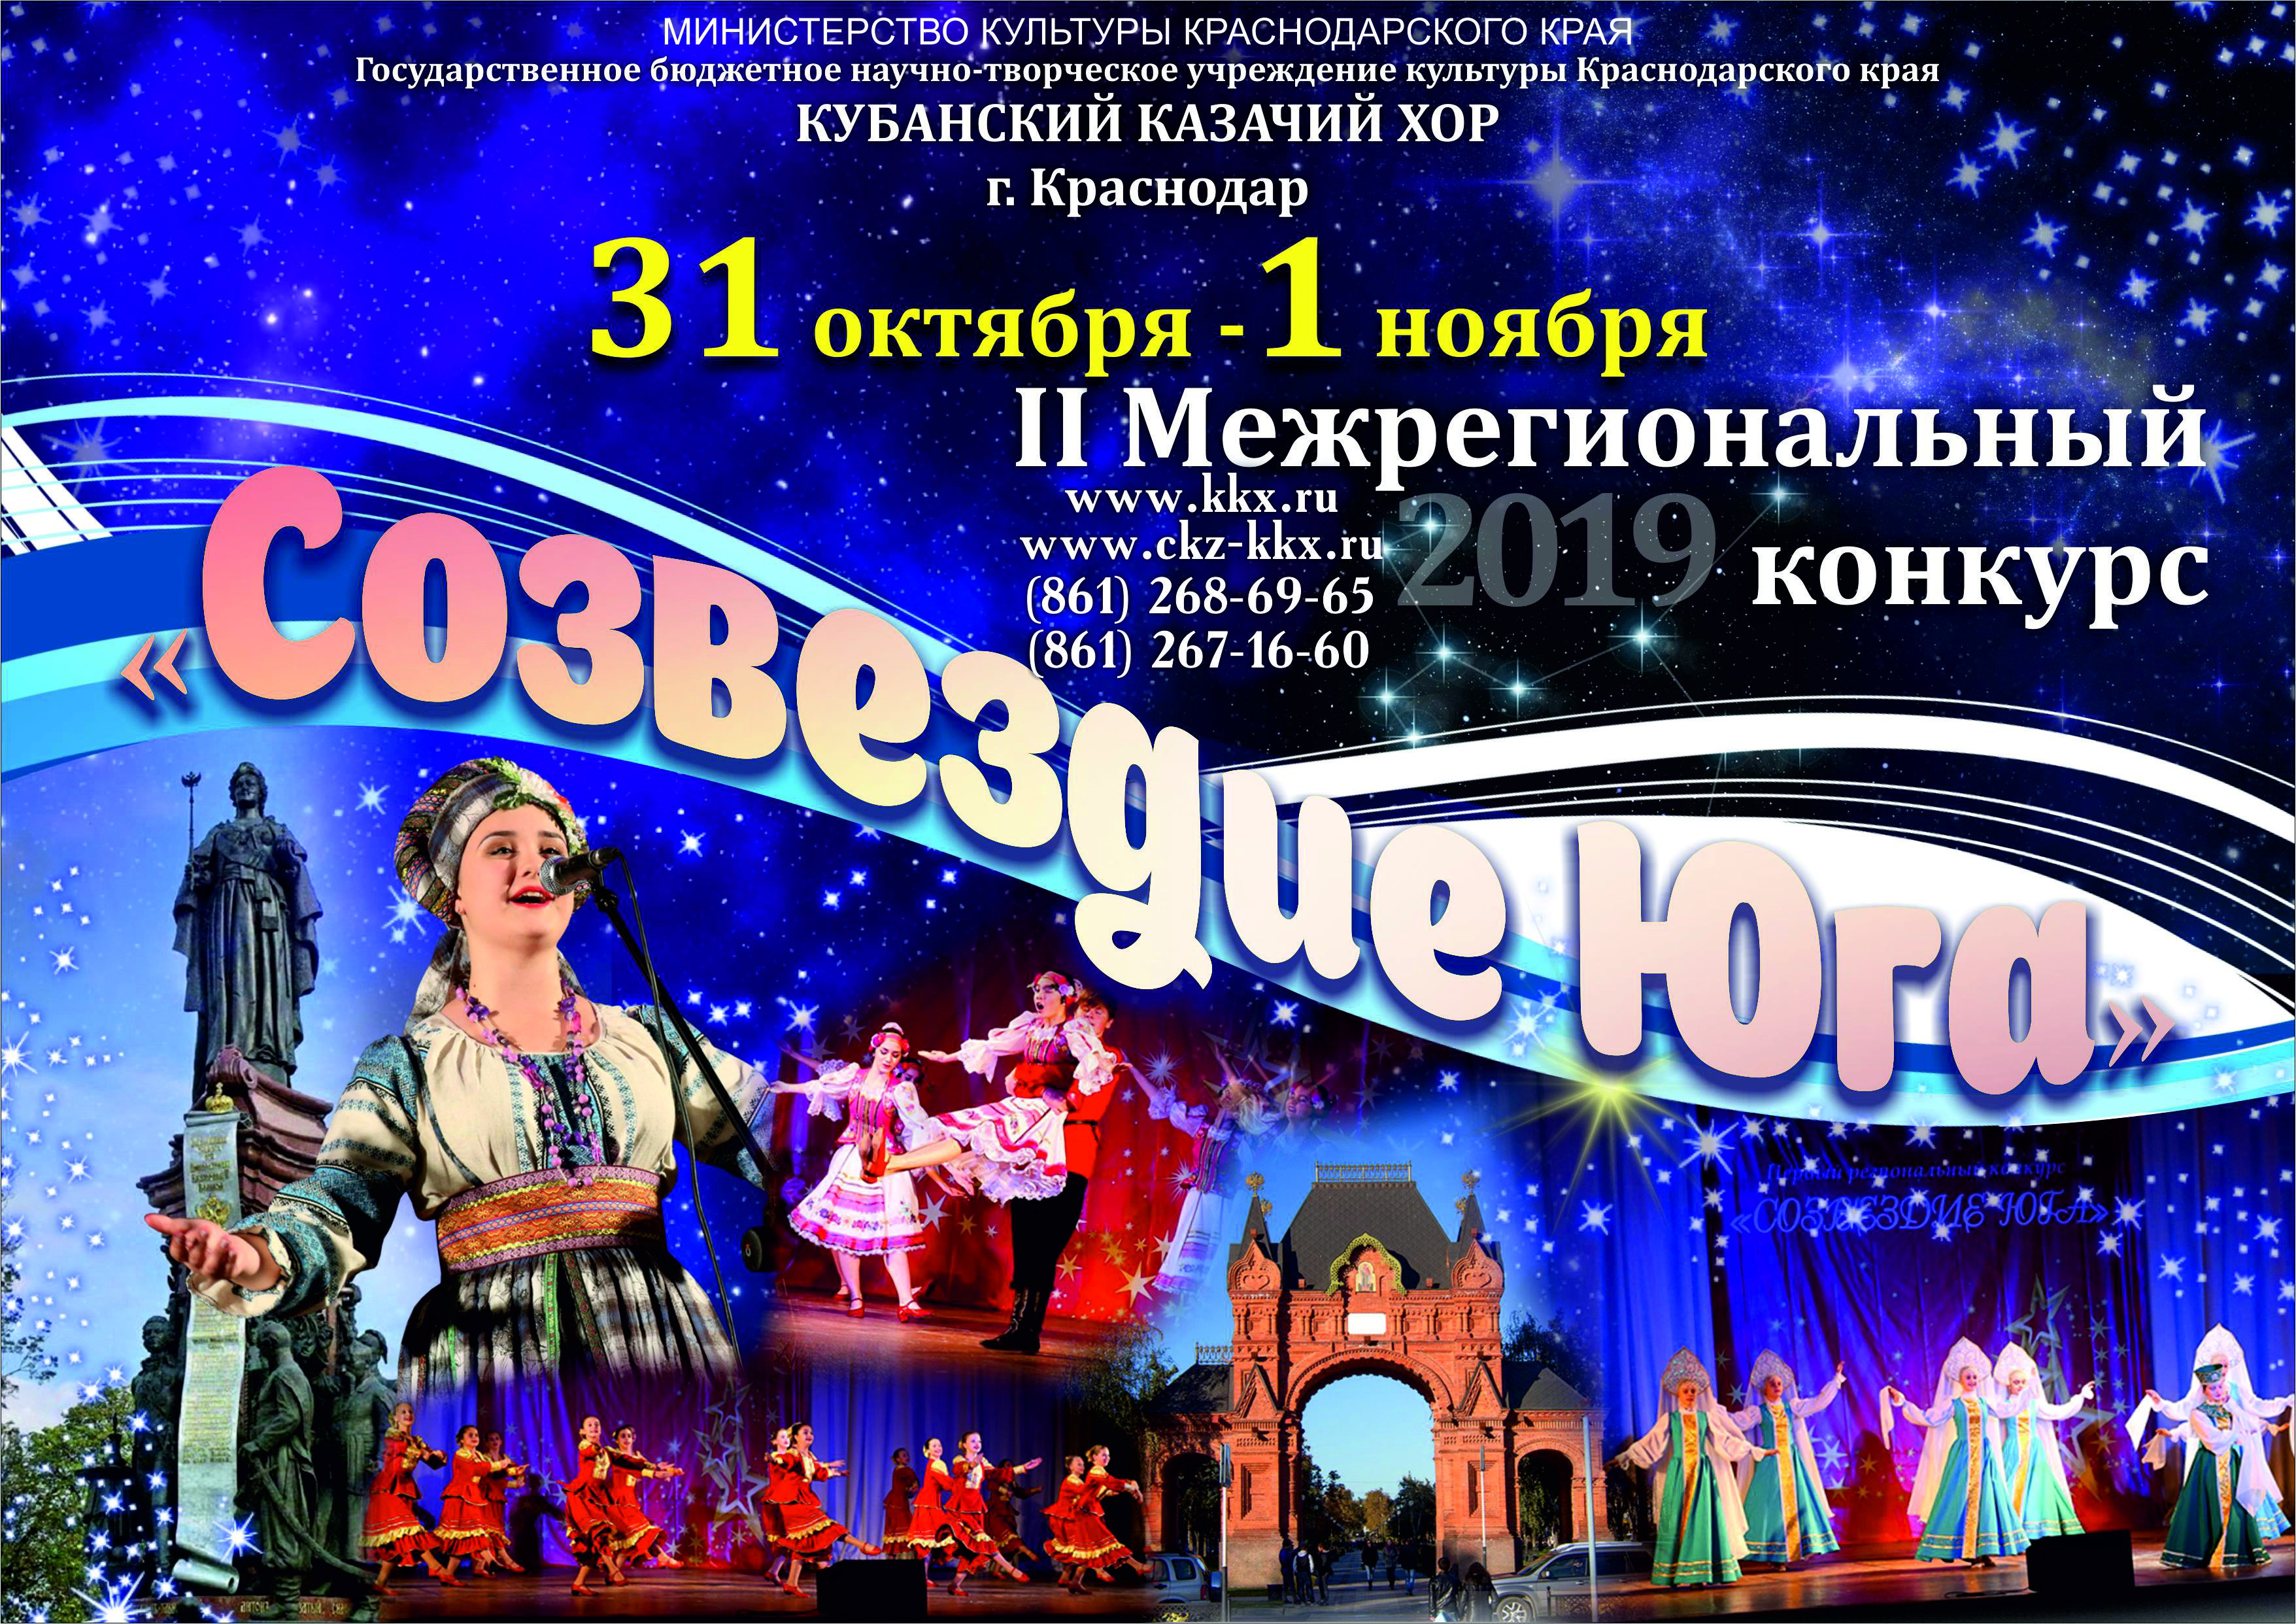 Творческие коллективы учреждений культуры Забайкалья приглашают принять участие в конкурсе «Созвездие Юга» в Краснодаре